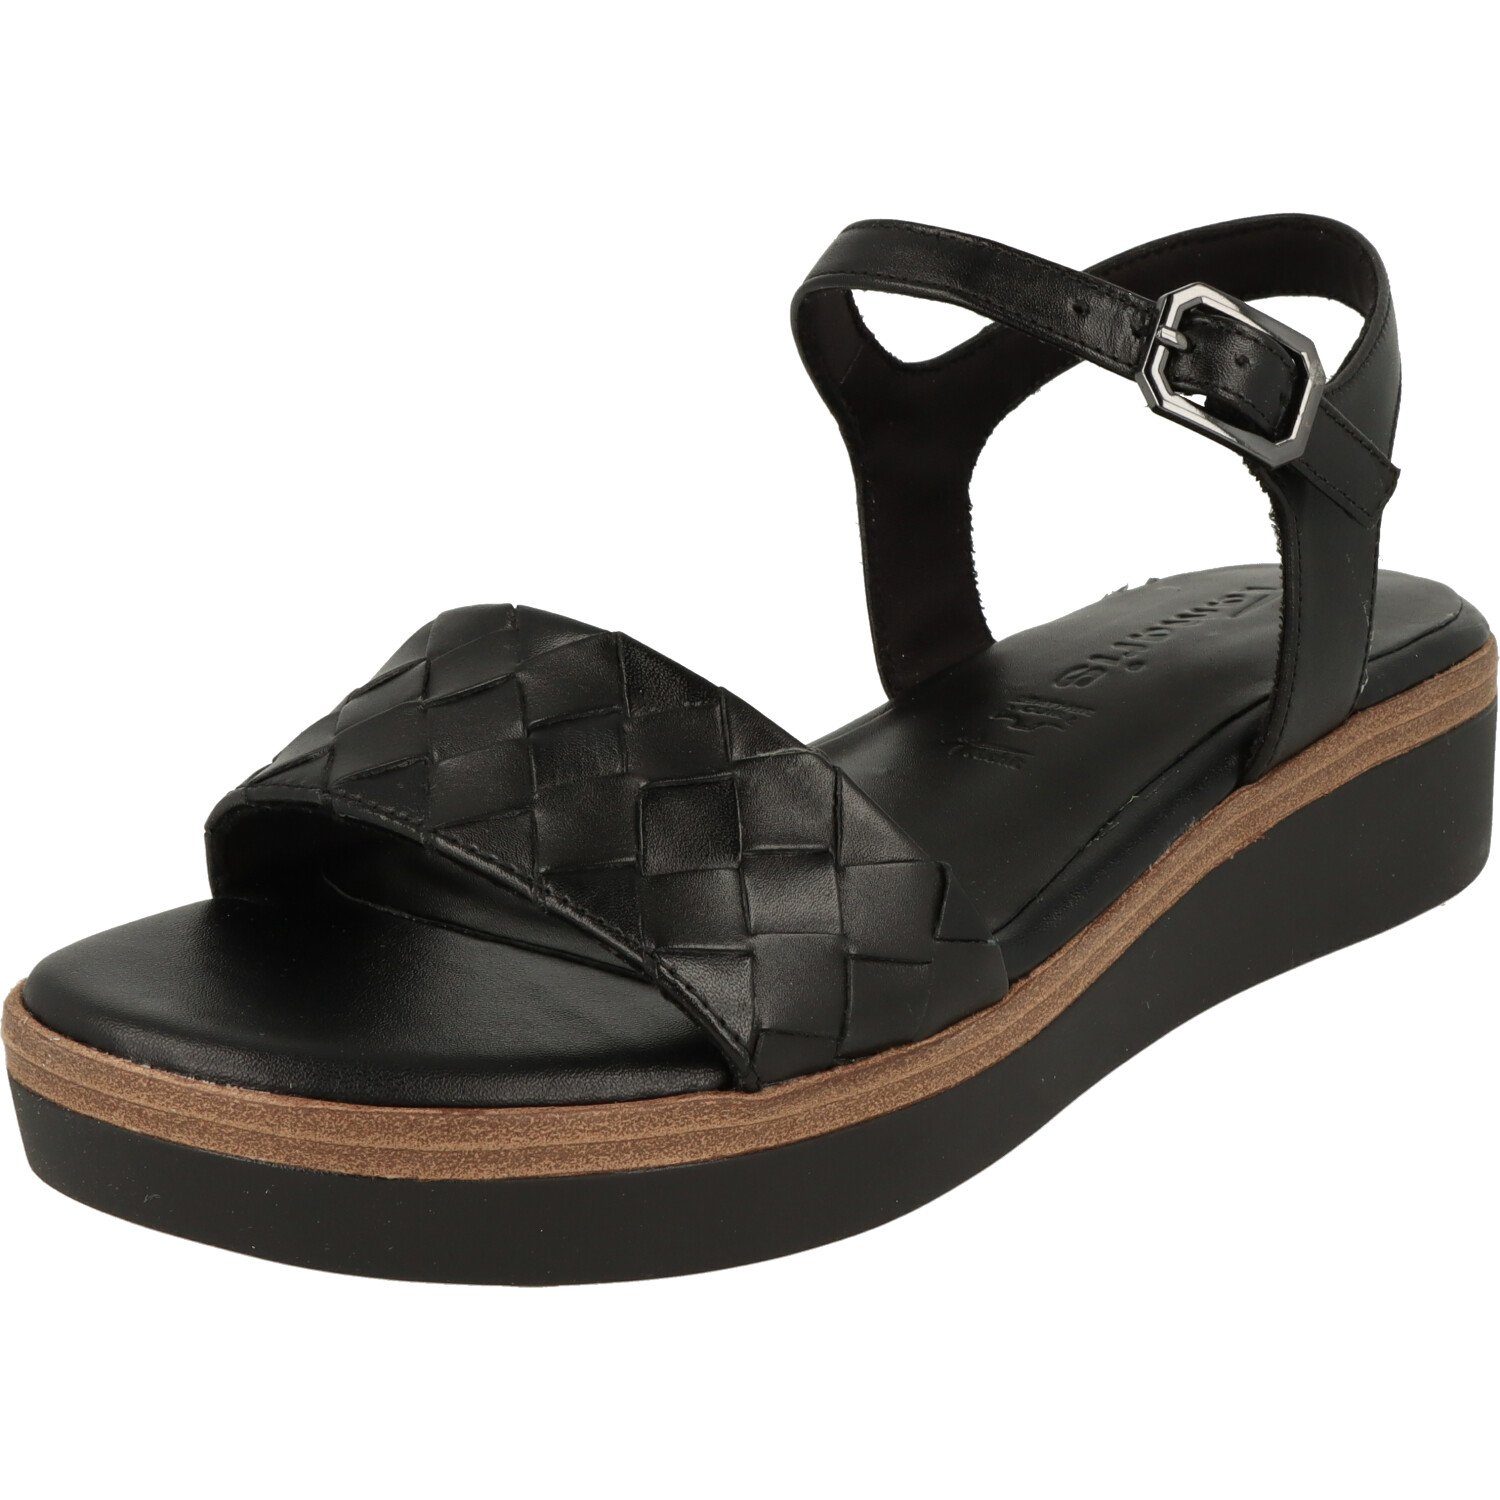 Black Damen Sandalette Leder Riemchen Komfort Schuhe Tamaris 1-28216-20 Sandalette